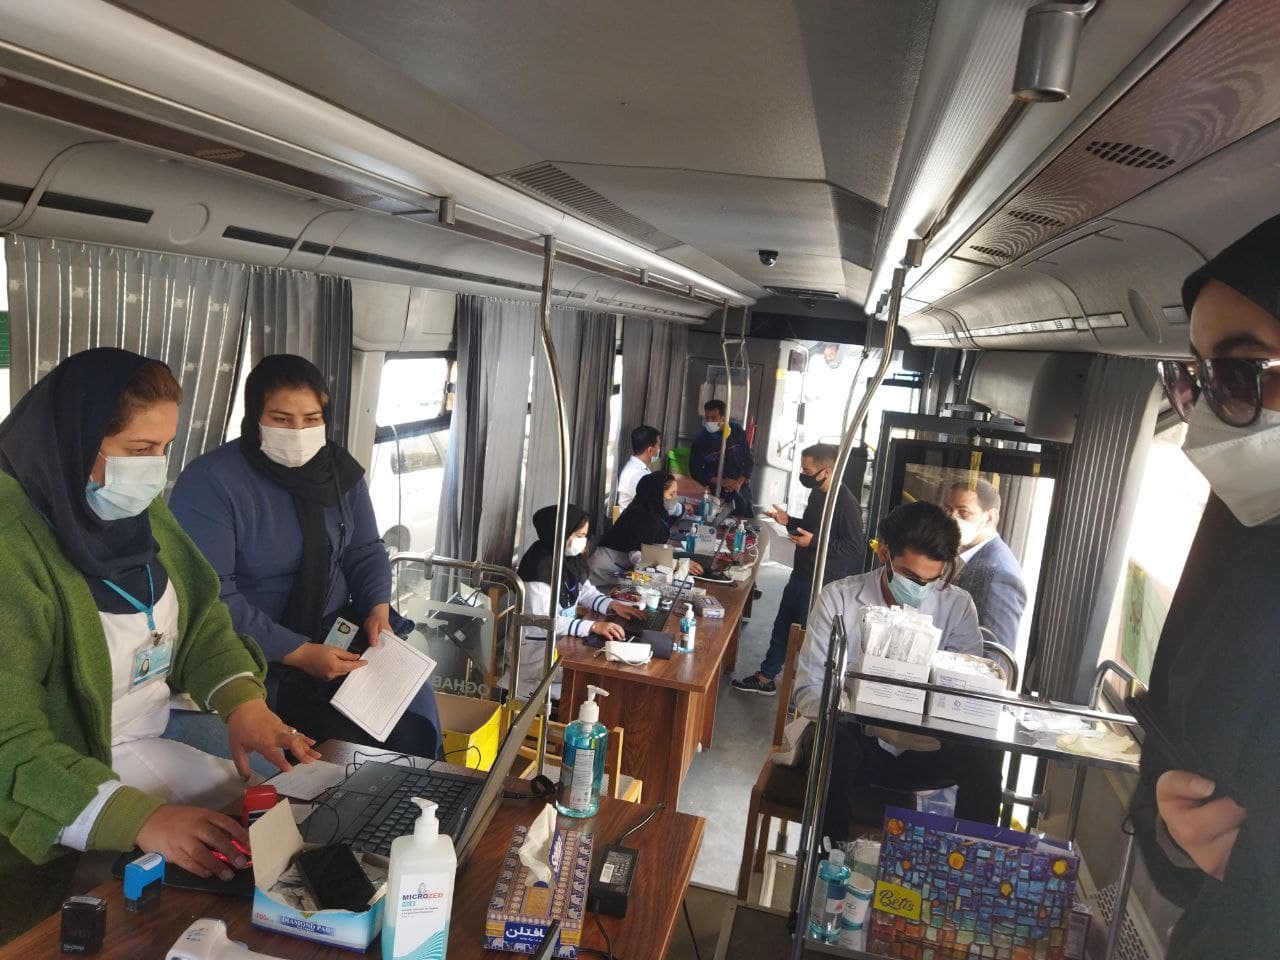 واکسیناسیون کرونا با اتوبوس سیار در حاشیه شهر مهرشهر آغاز شد